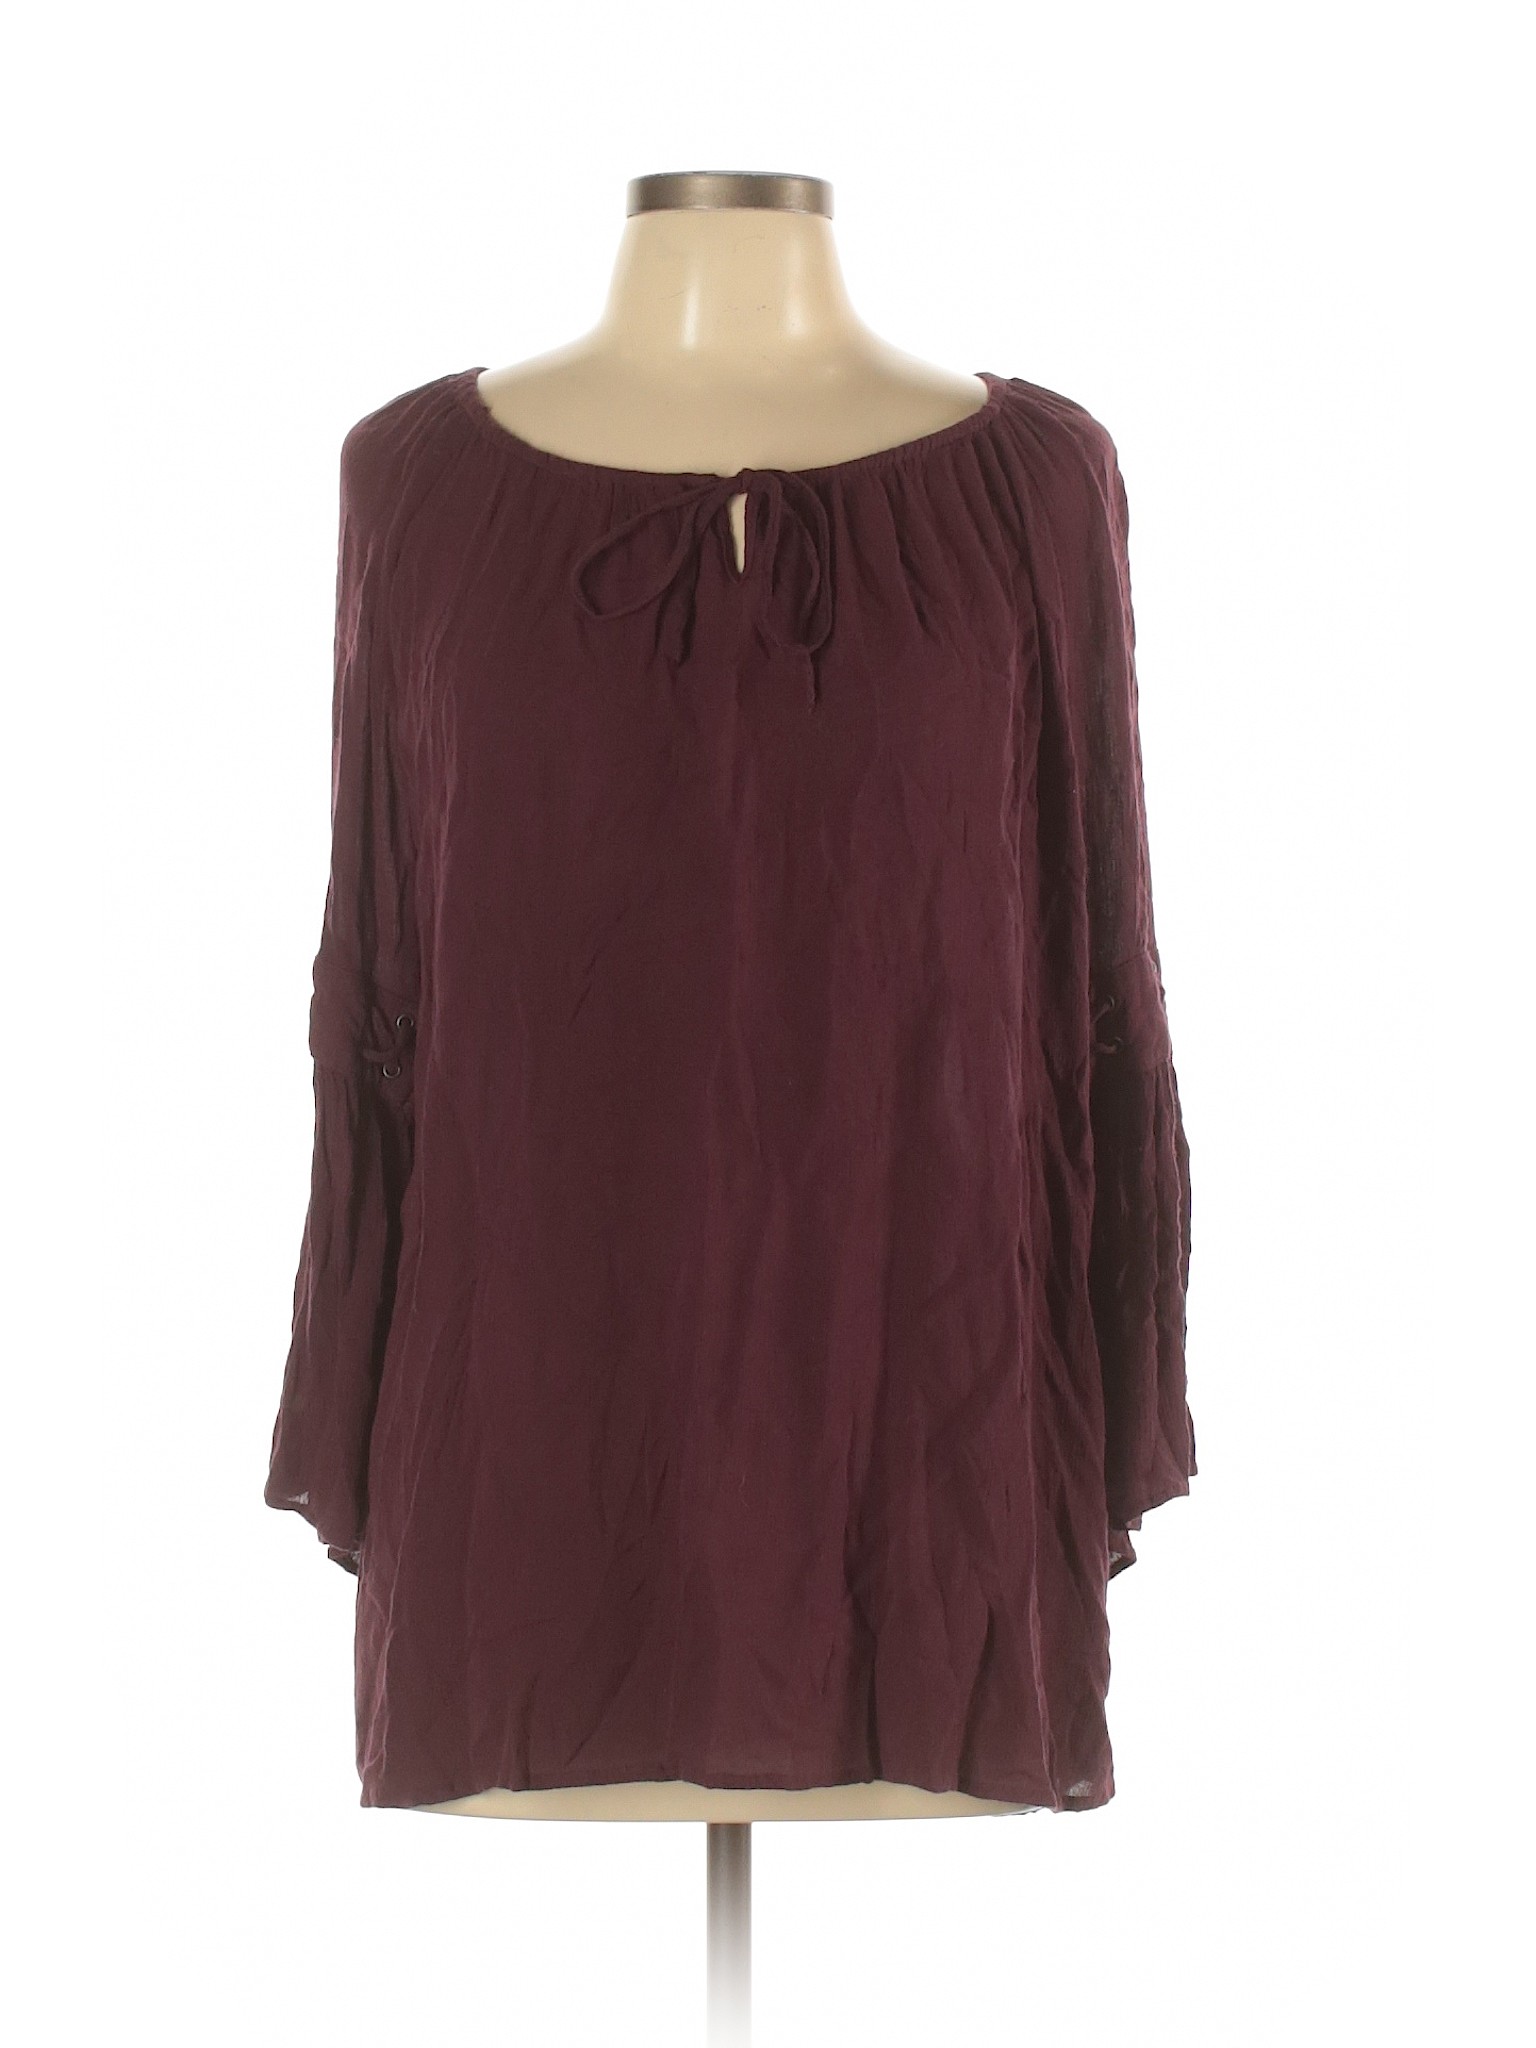 Style&Co Women Purple 3/4 Sleeve Blouse L | eBay